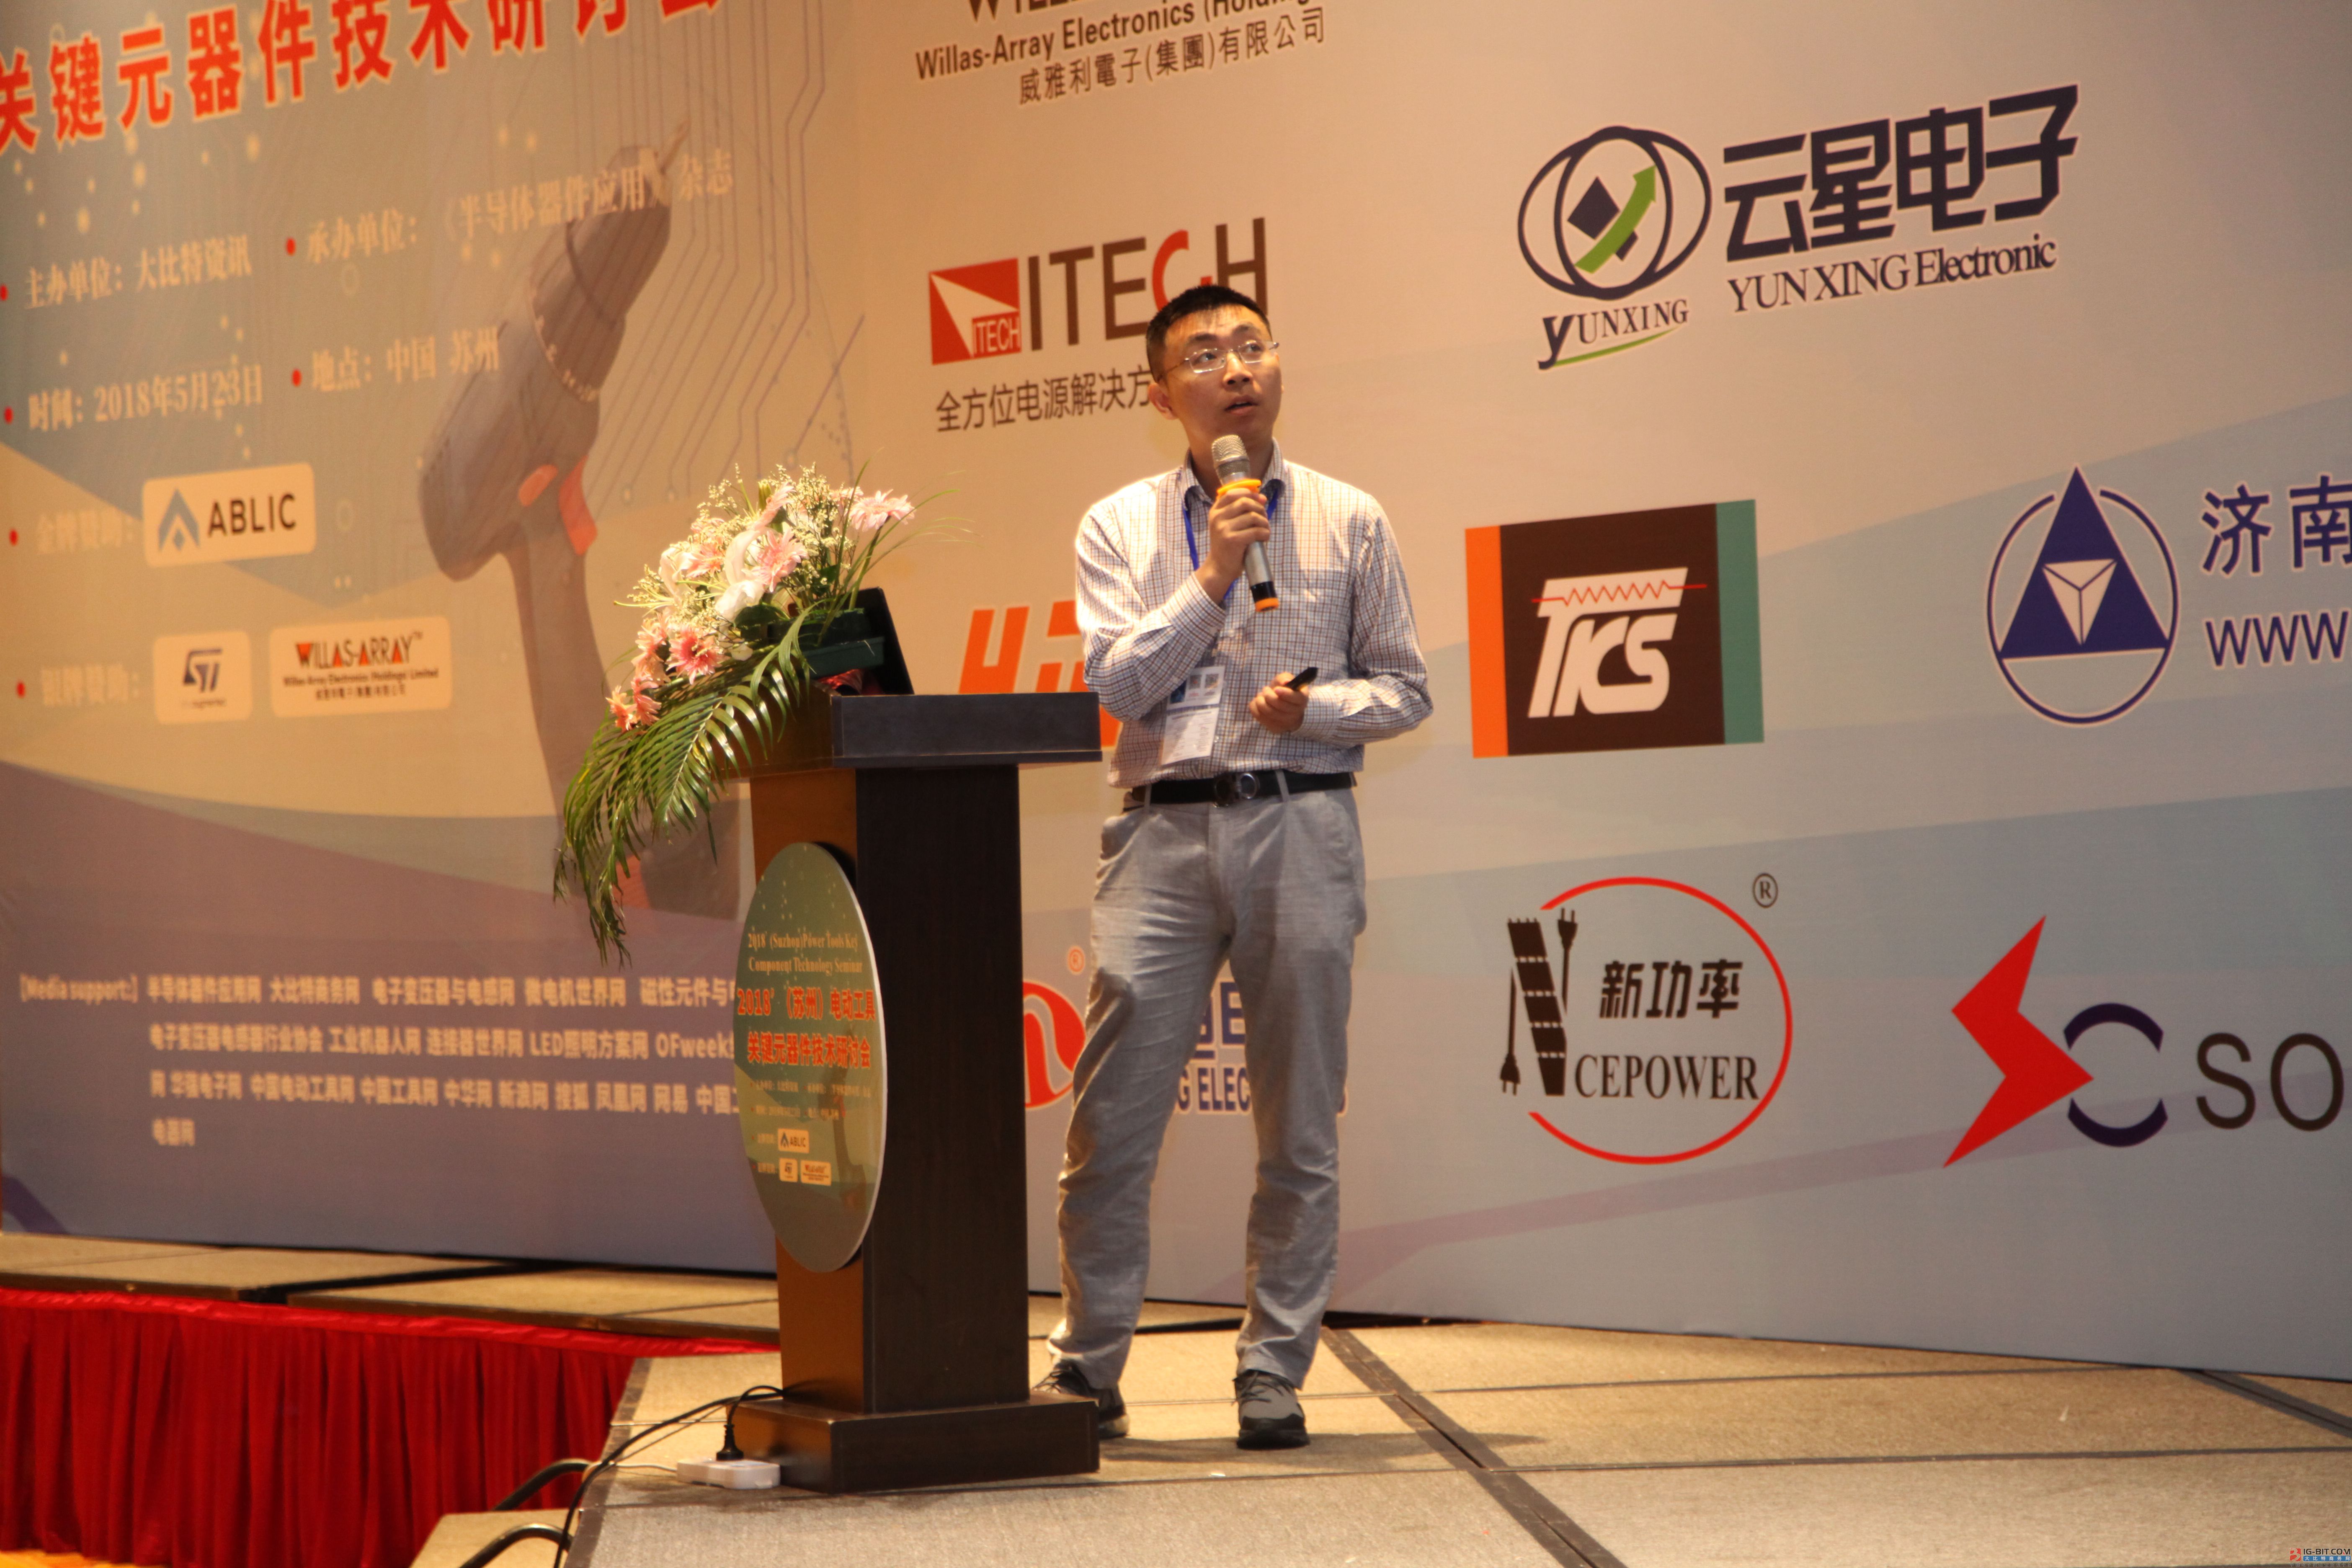 “2018'(苏州)电动工具关键元器件技术研讨会”